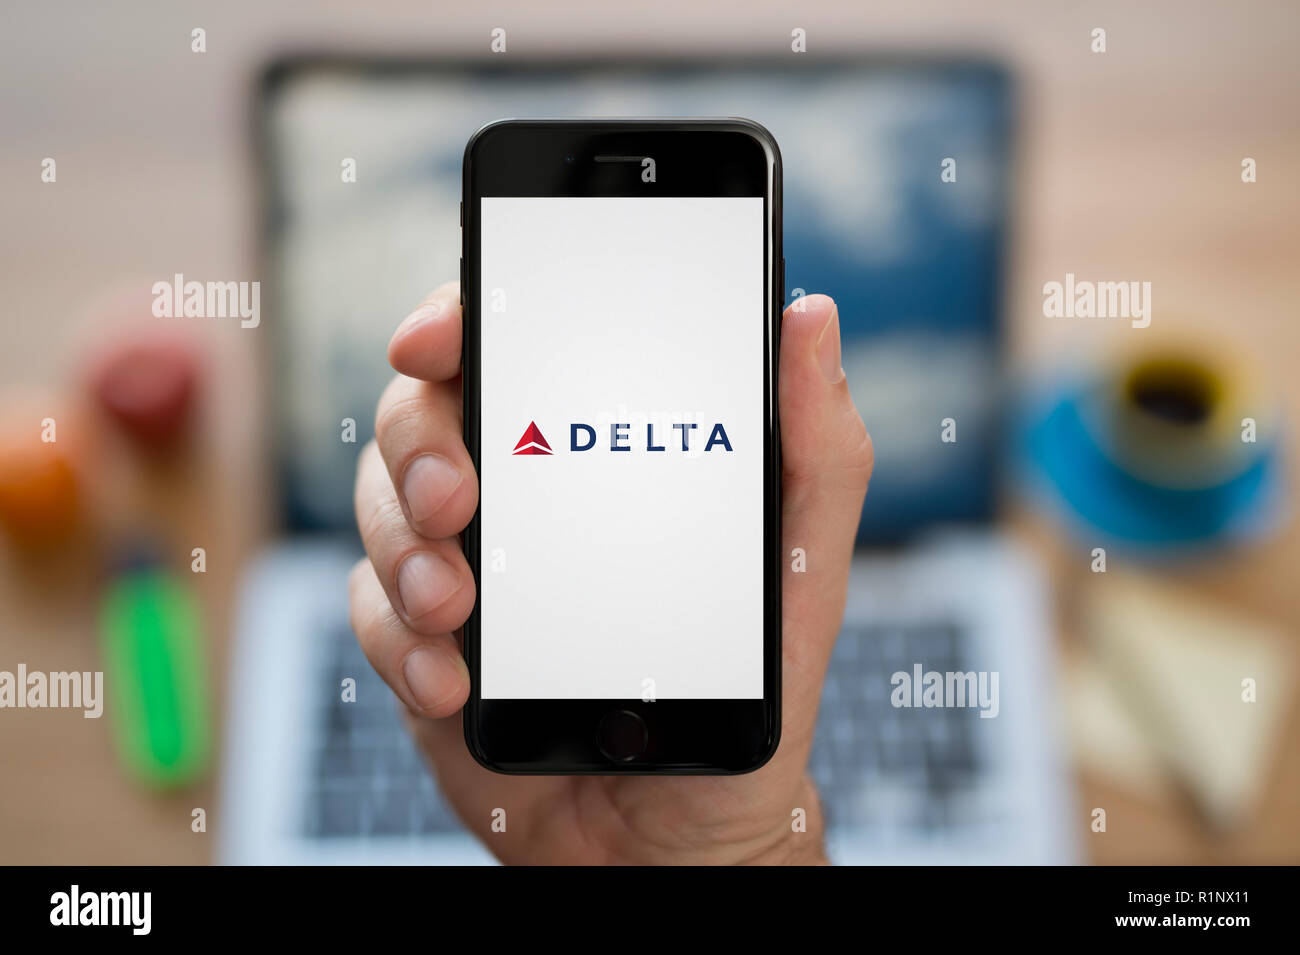 Ein Mann schaut auf seinem iPhone die zeigt die Delta Air Lines logo, während saß an seinem Computer Schreibtisch (nur redaktionelle Nutzung). Stockfoto